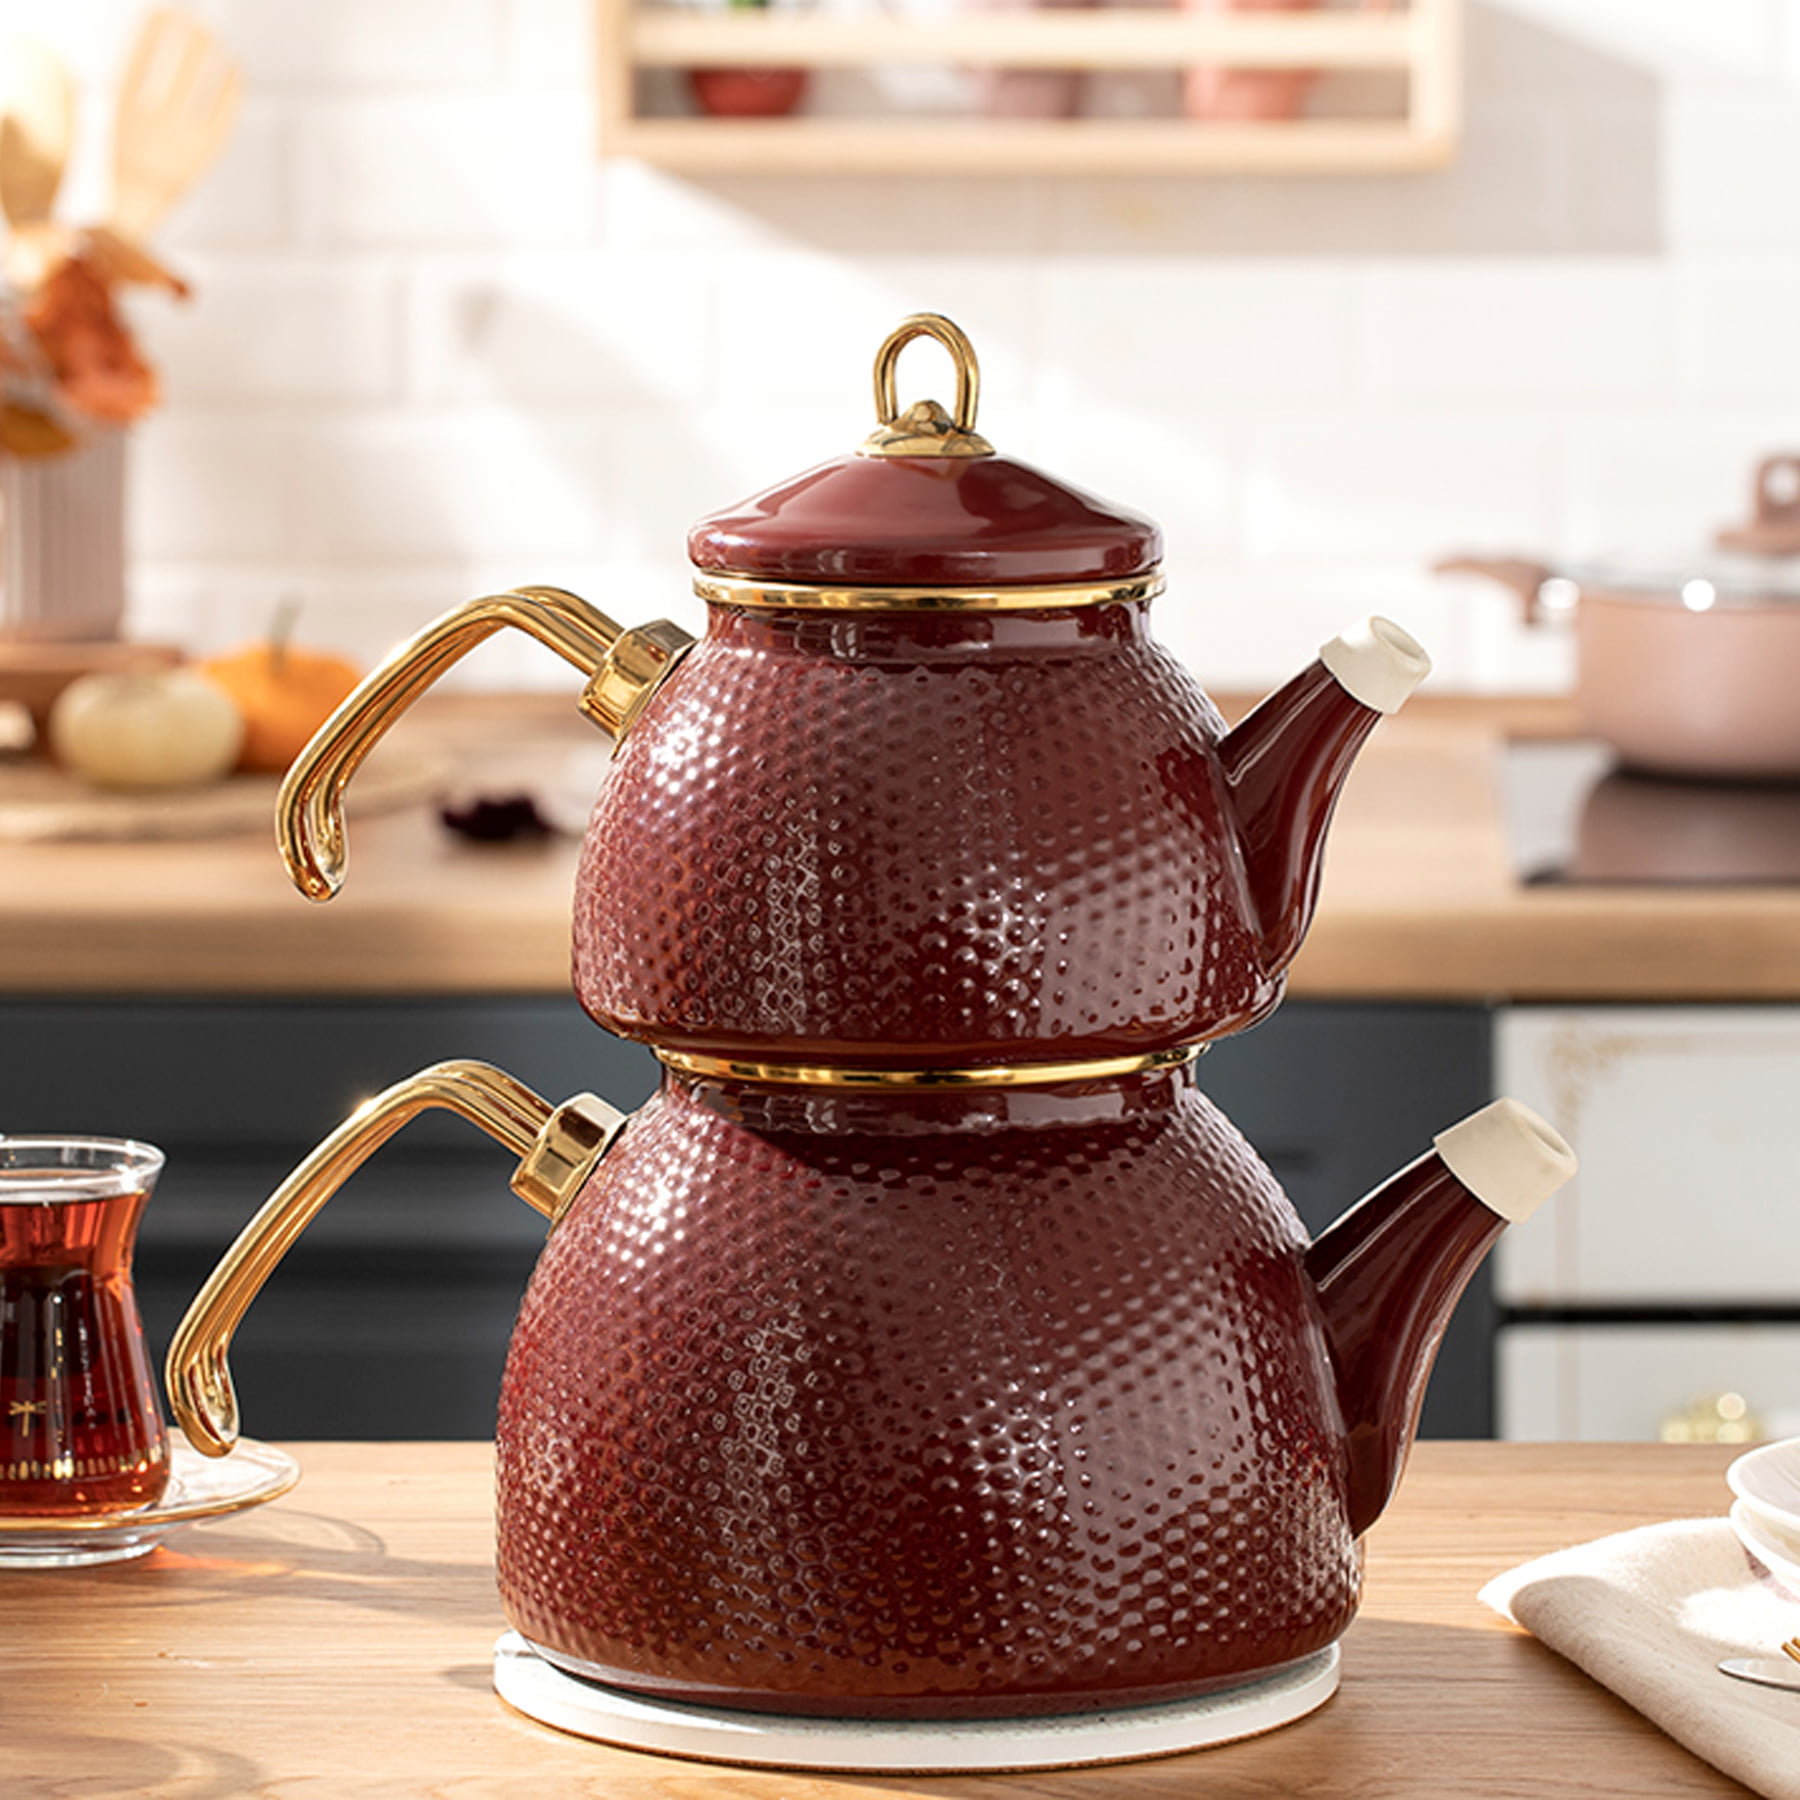 https://traditionalturk.com/wp-content/uploads/2021/12/burgundy-color-ceremony-enamel-turkish-tea-pot-kettle.jpg